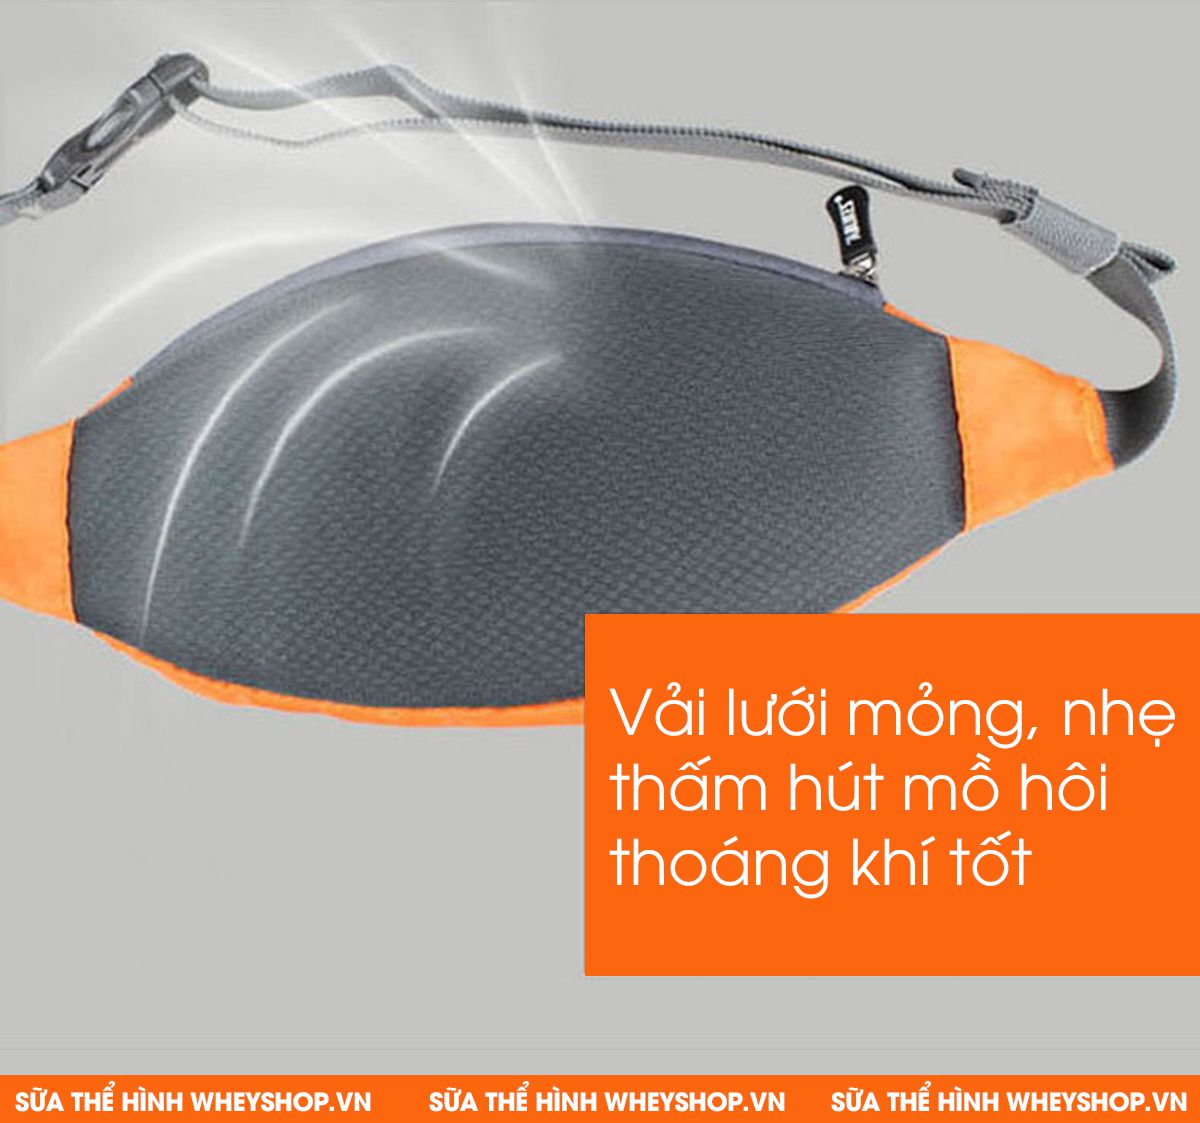 Túi đeo hông chạy bộ Aolikes YE-3310 là phụ kiện đựng đồ, hỗ trợ người chạy bộ chơi thể thao cao cấp. Sản phẩm nhập khẩu chính hãng, giá rẻ nhất tại Hà Nội...